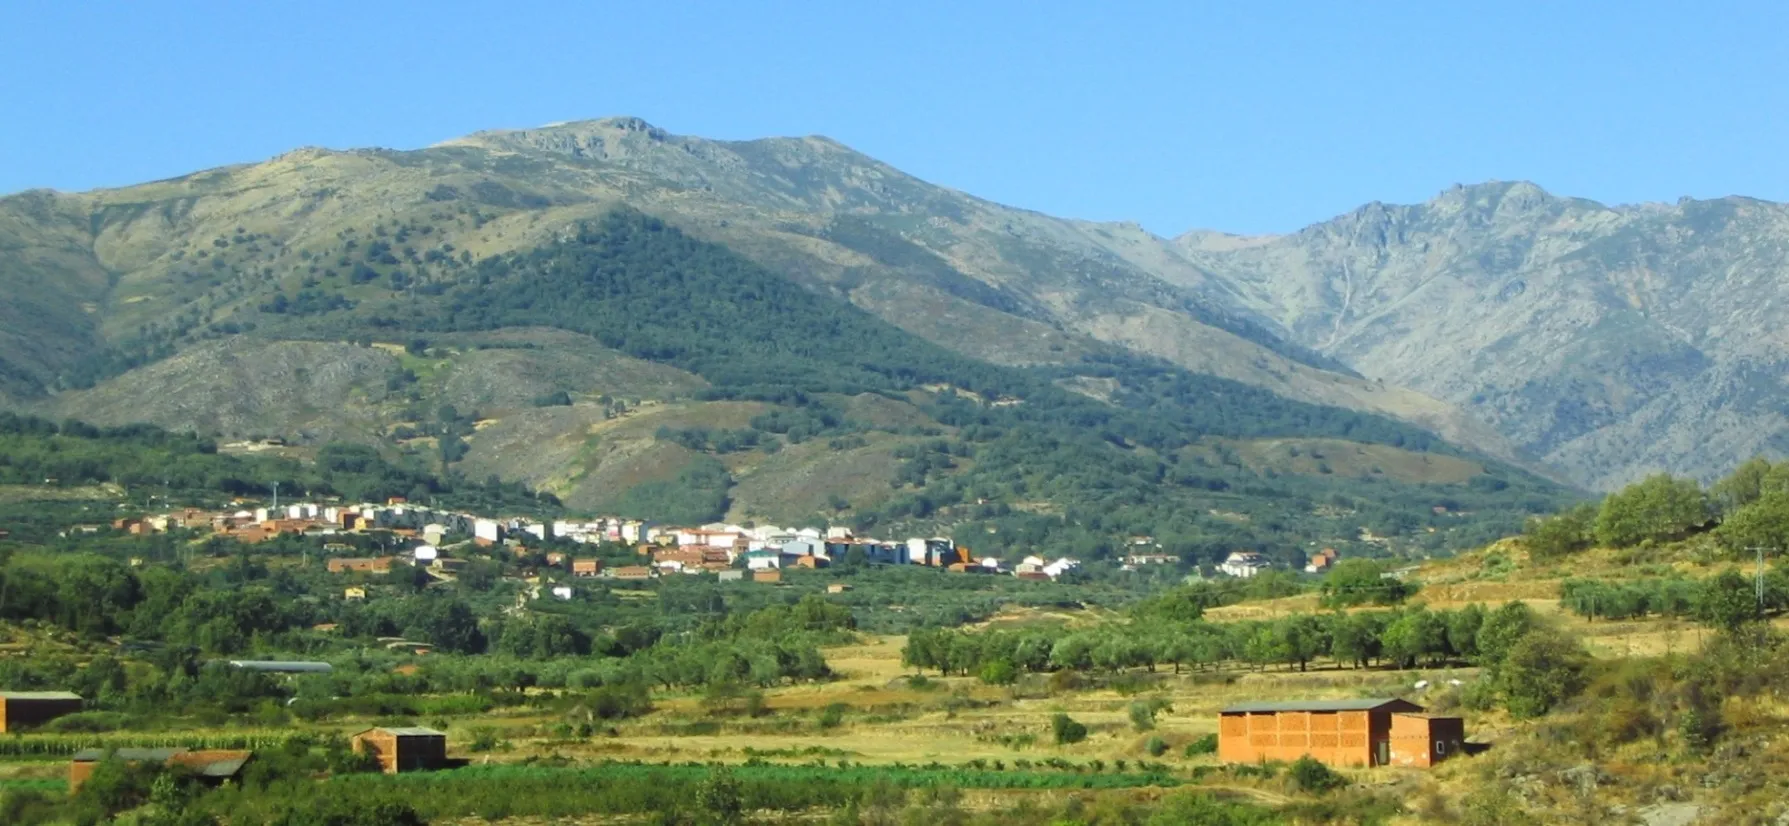 Photo showing: Comarca de La Vera, situada al norte de la provincia de Cáceres, España